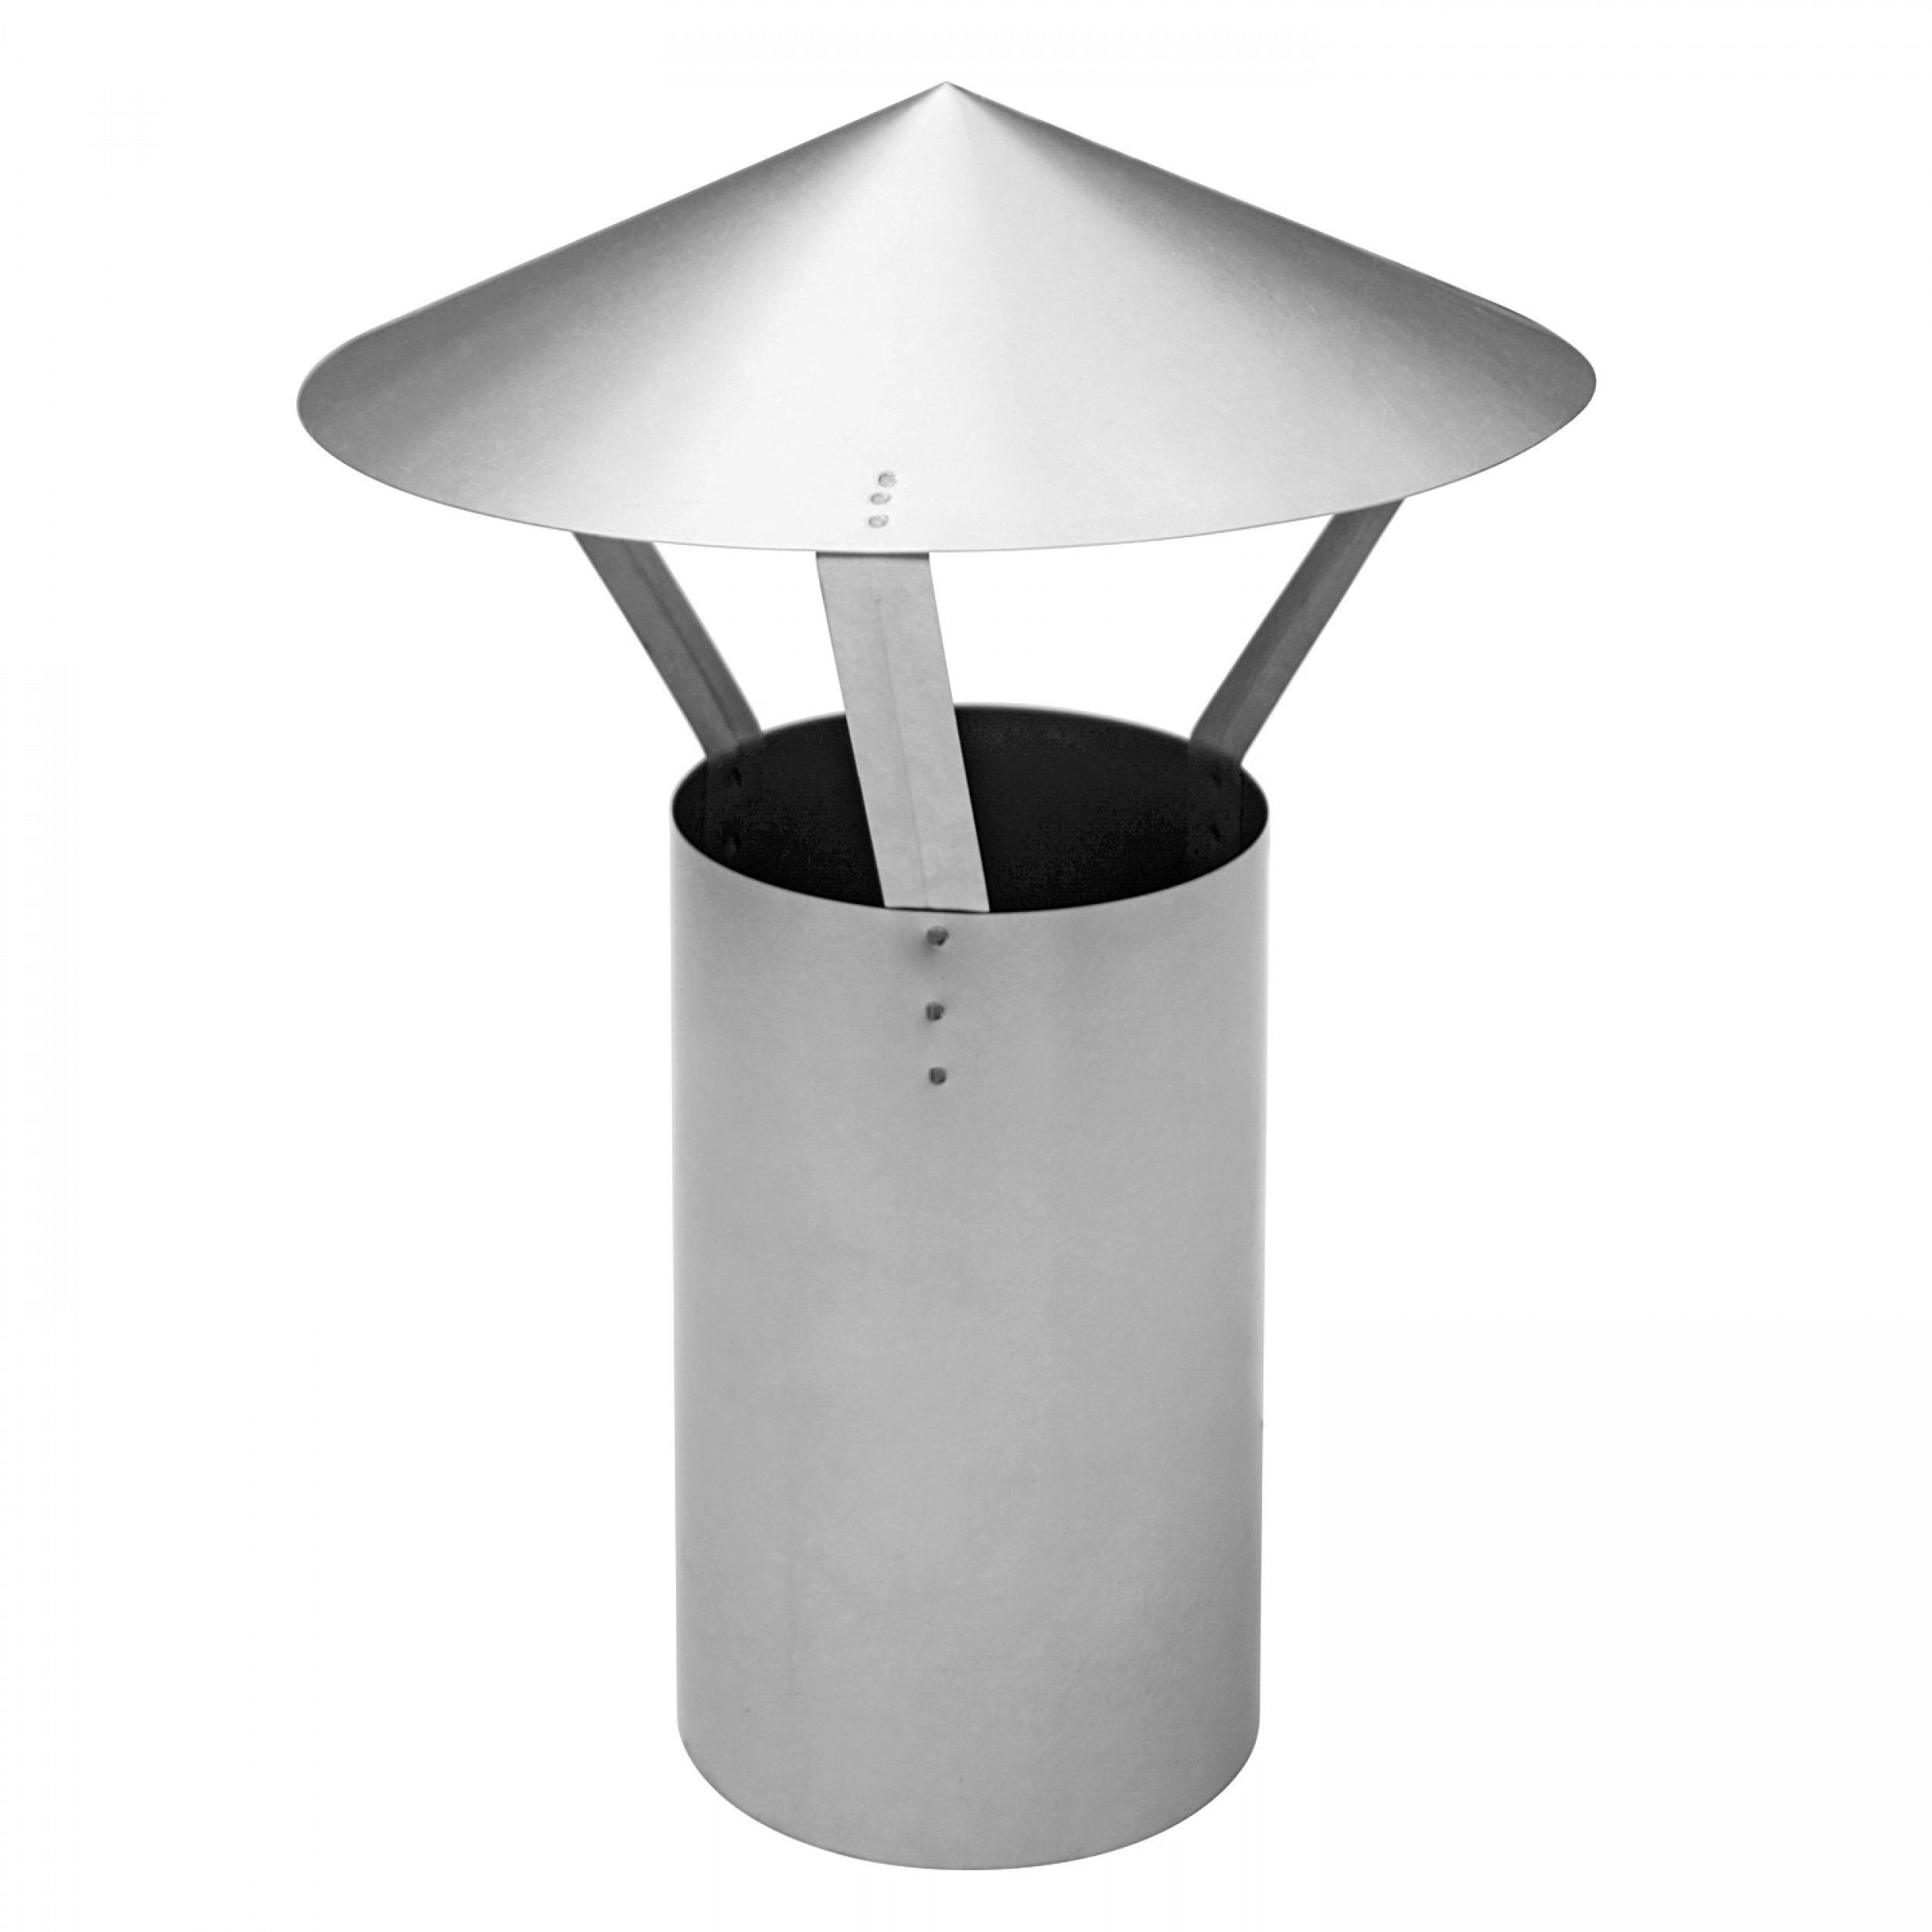 raik Ofenrohr/Rauchrohr-Stutzen 130 mm Durchmesser mit Regenhaube FAL 0,6 mm Stärke Blank 130110012